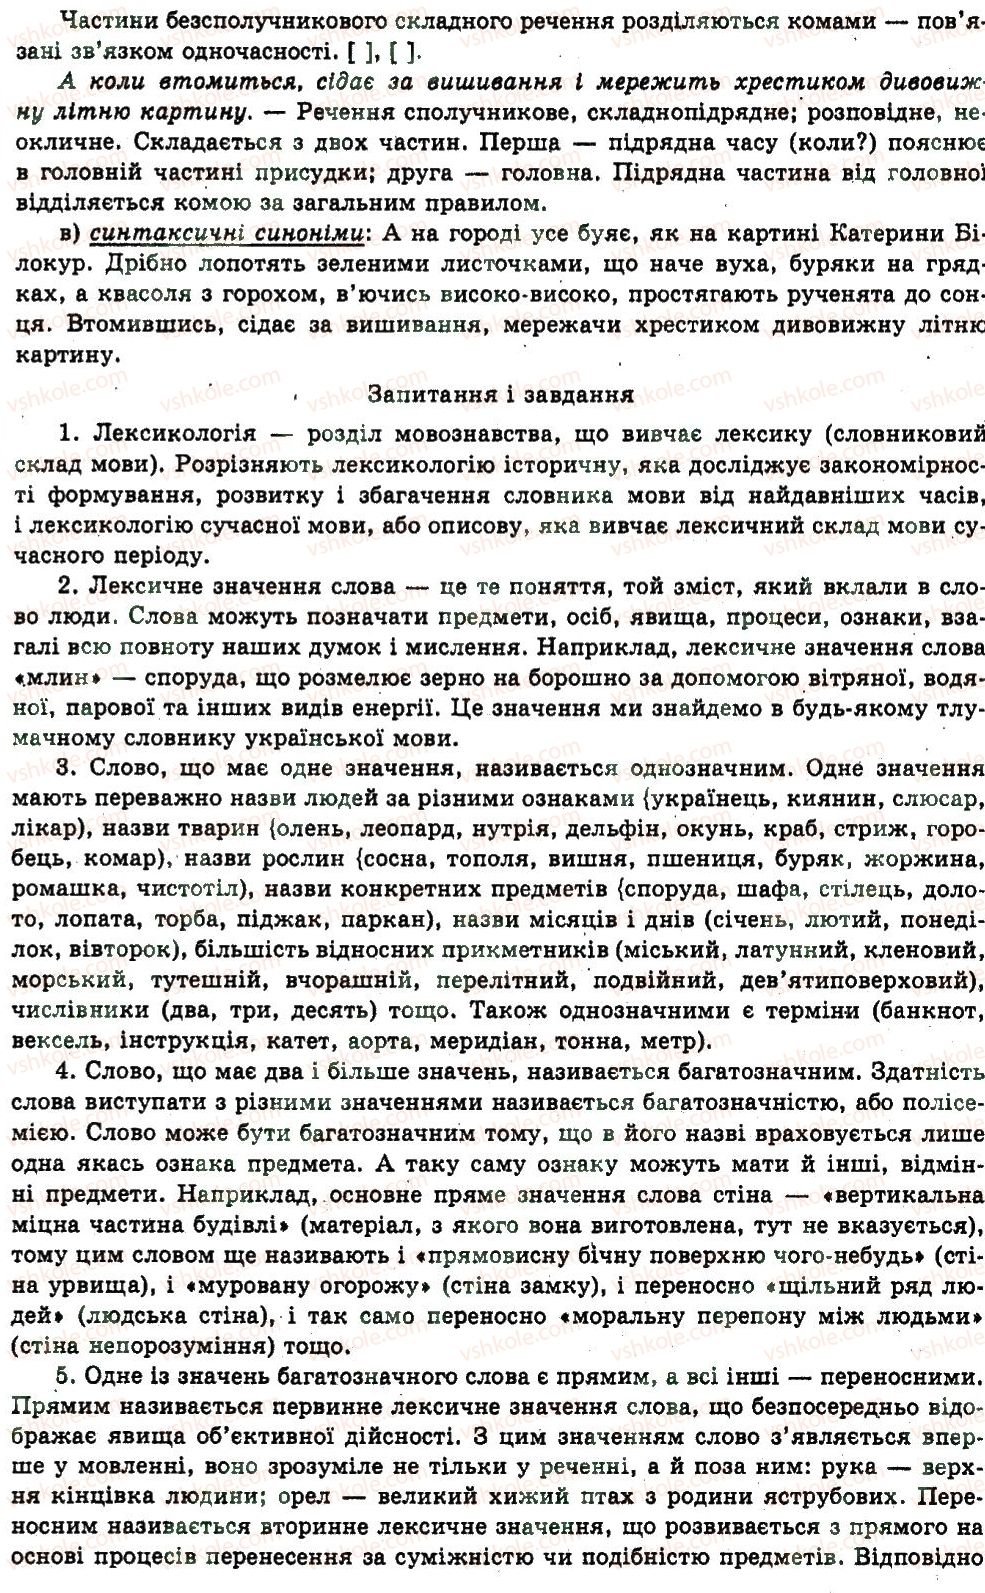 11-ukrayinska-mova-nv-bondarenko-2011--uzagalnennya-i-sistematizatsiya-najvazhlivishih-vidomostej-z-osnovnih-rozdiliv-nauki-pro-movu-23-leksikologiya-frazeologiya-435-rnd4079.jpg